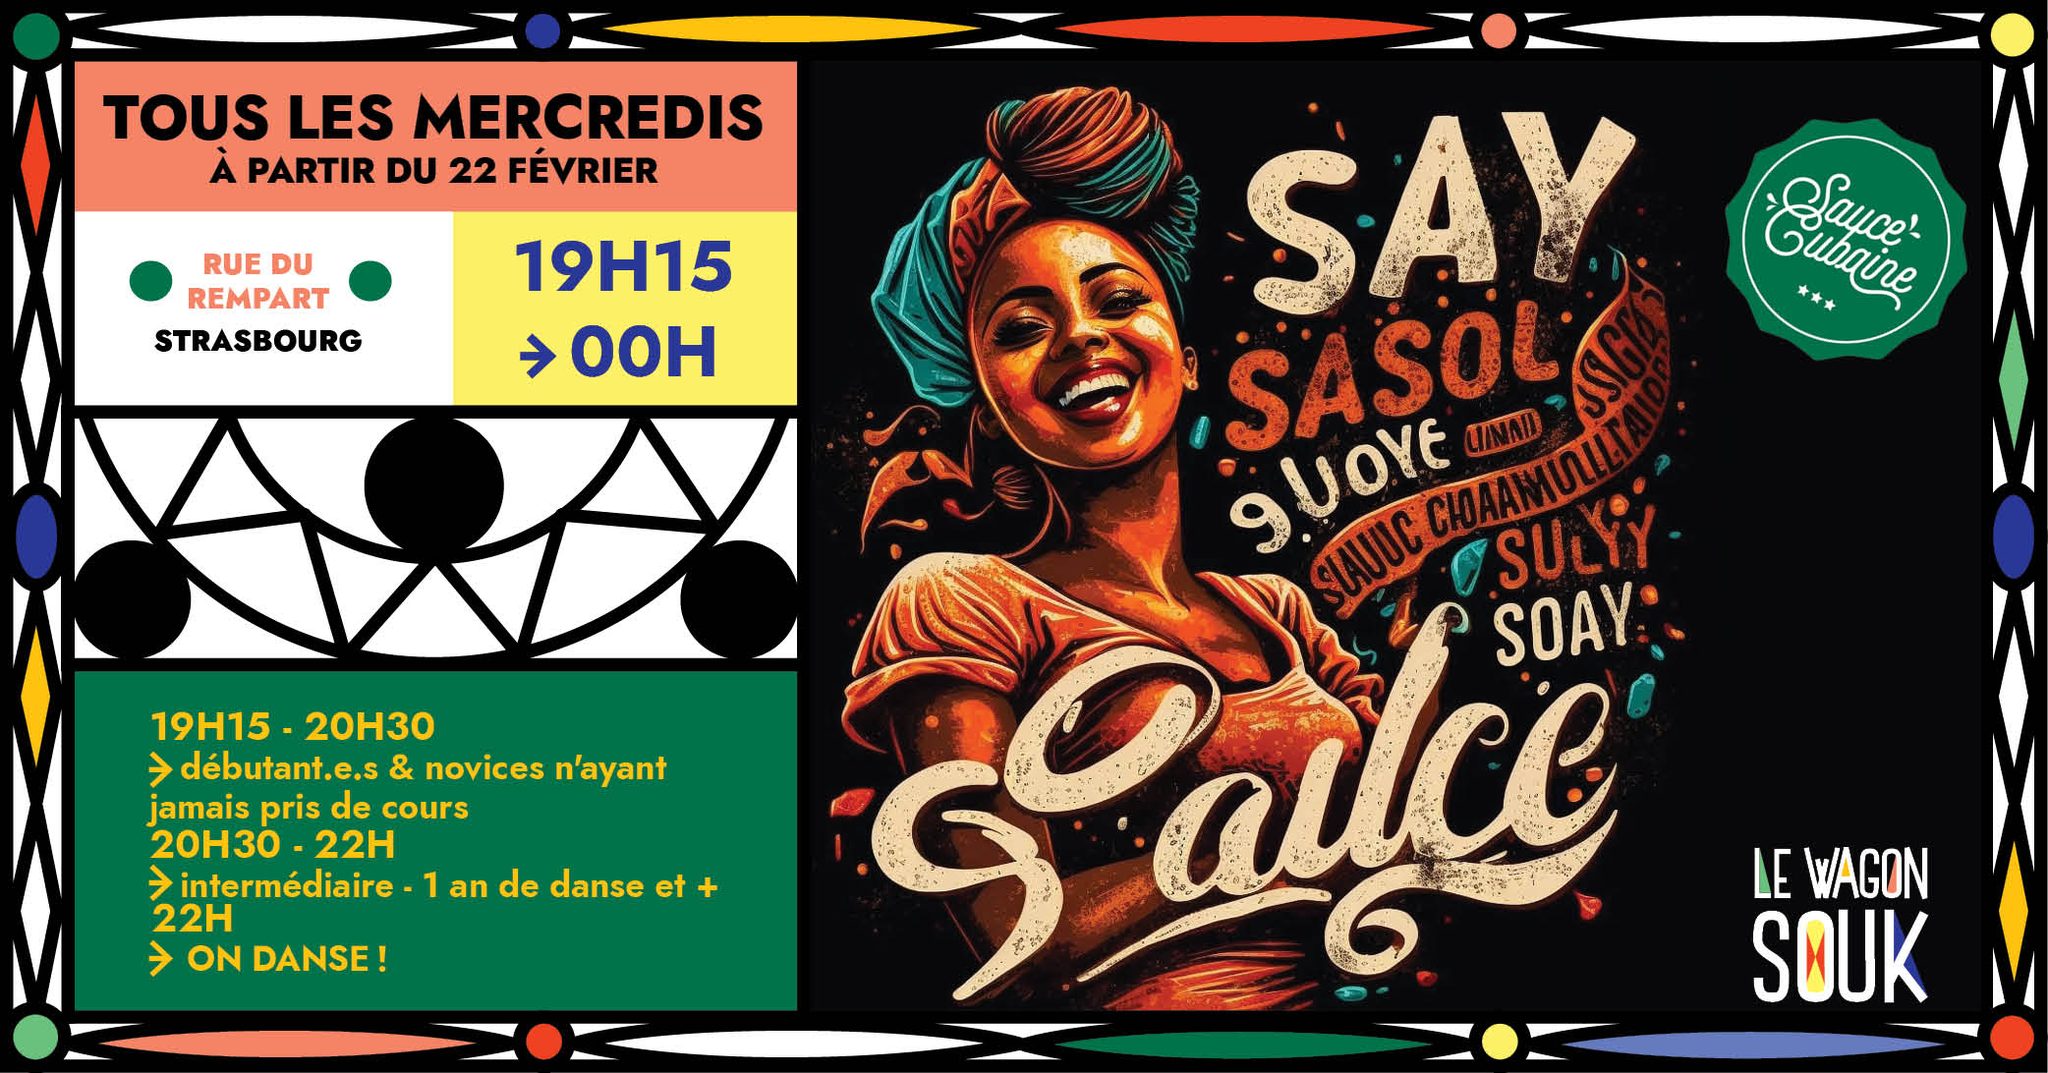 Salsa Souk – Cours de salsa – à partir de février